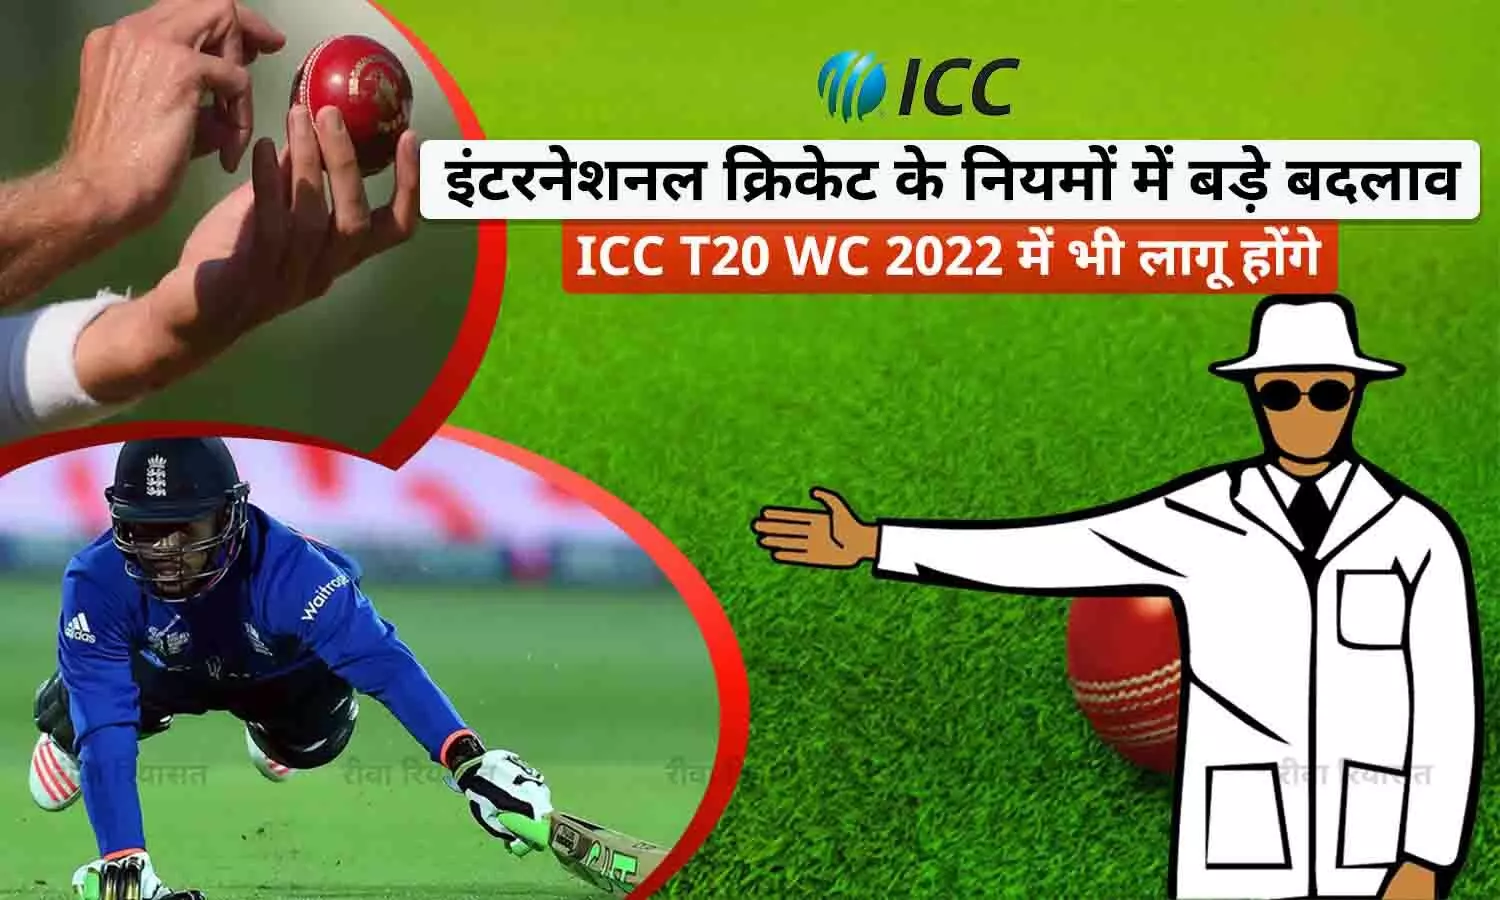 T20 WC 2022 से पहले ICC ने क्रिकेट के नियमों में बड़े बदलाव किए हैं, आपको भी जानना जरूरी है